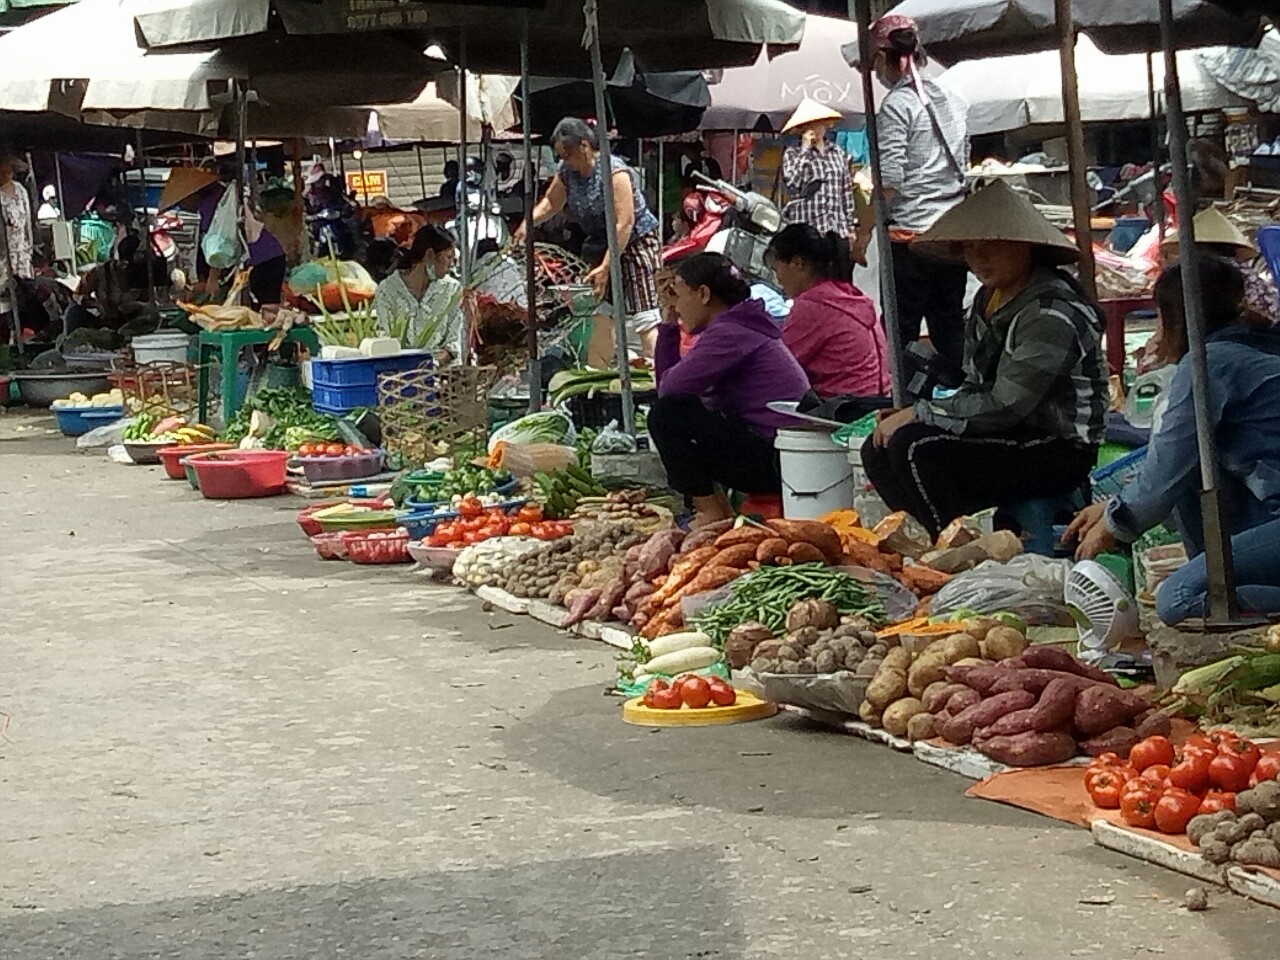 Giải pháp nâng cao vấn đề an toàn thực phẩm trong các chợ truyền thống tại Hà Nội